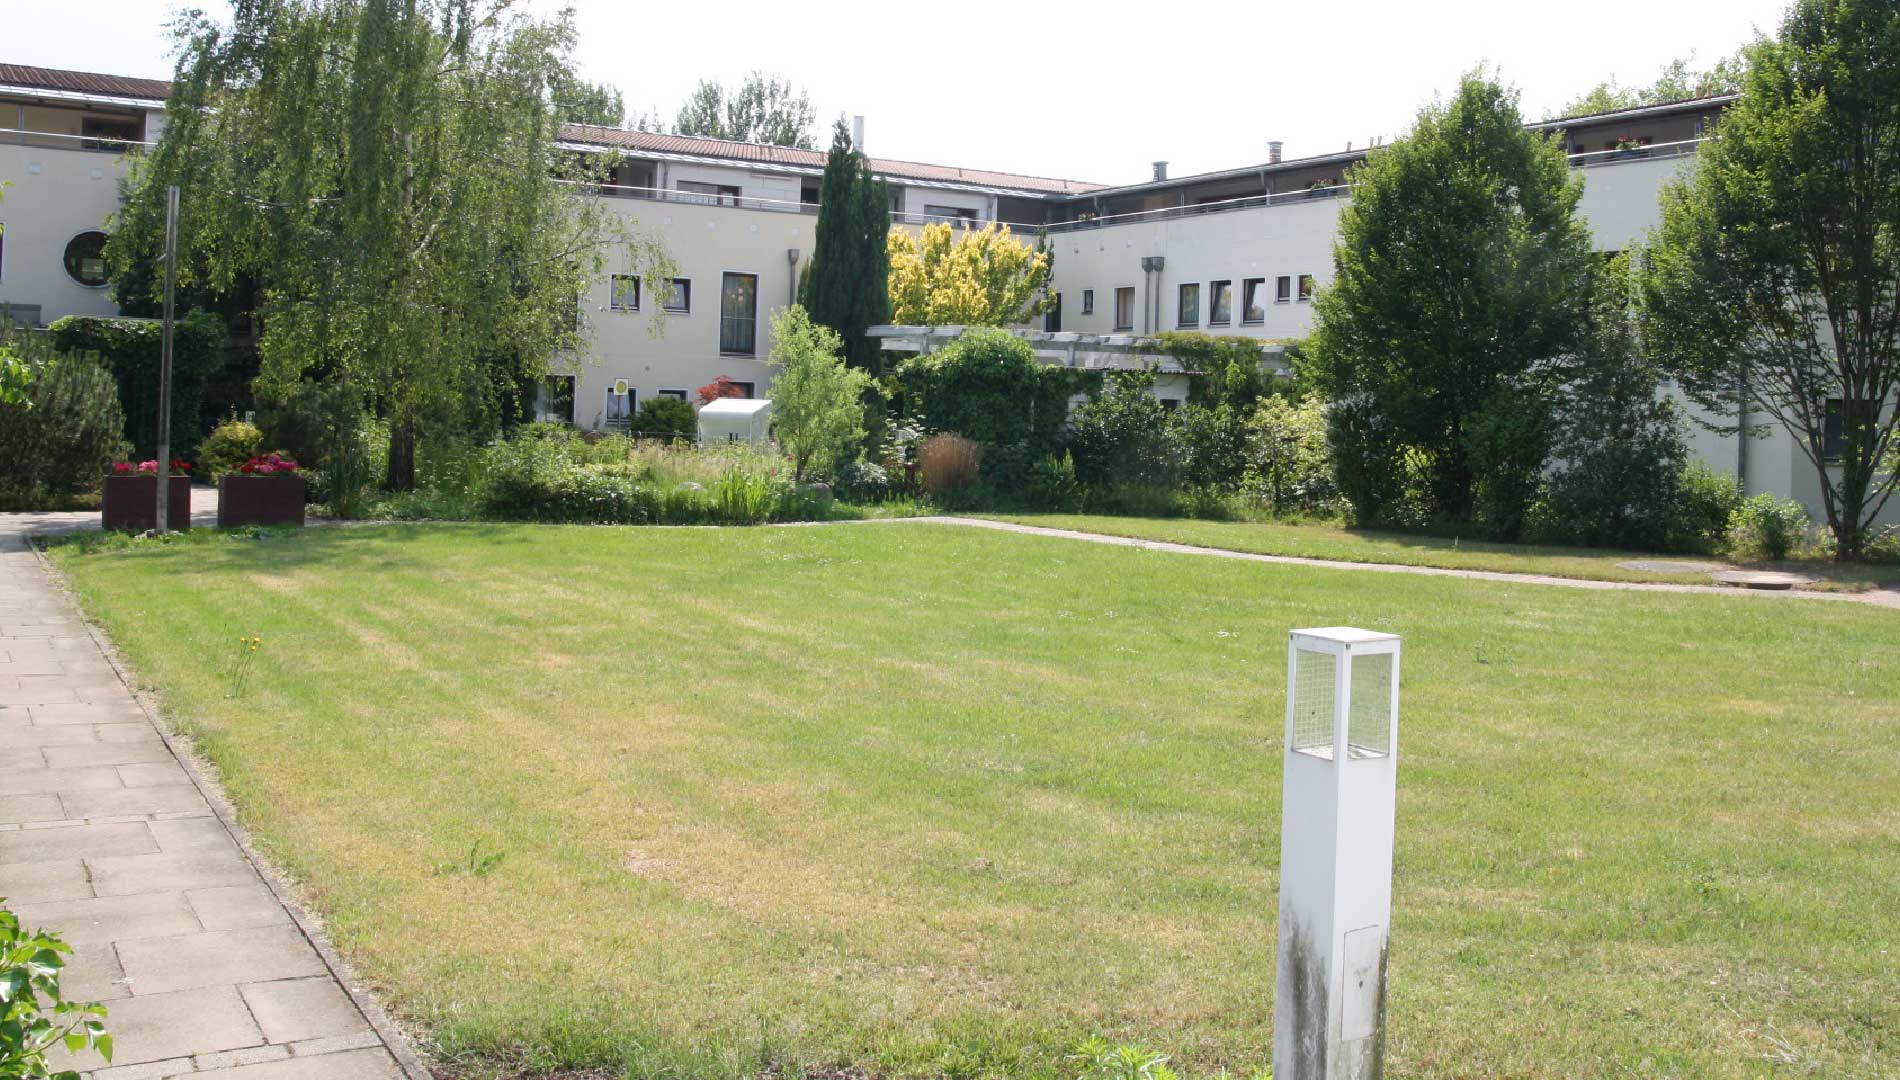 Unsere Haus hinterhof Pflege- & Betreuungszentrum Landsitz Weseraue